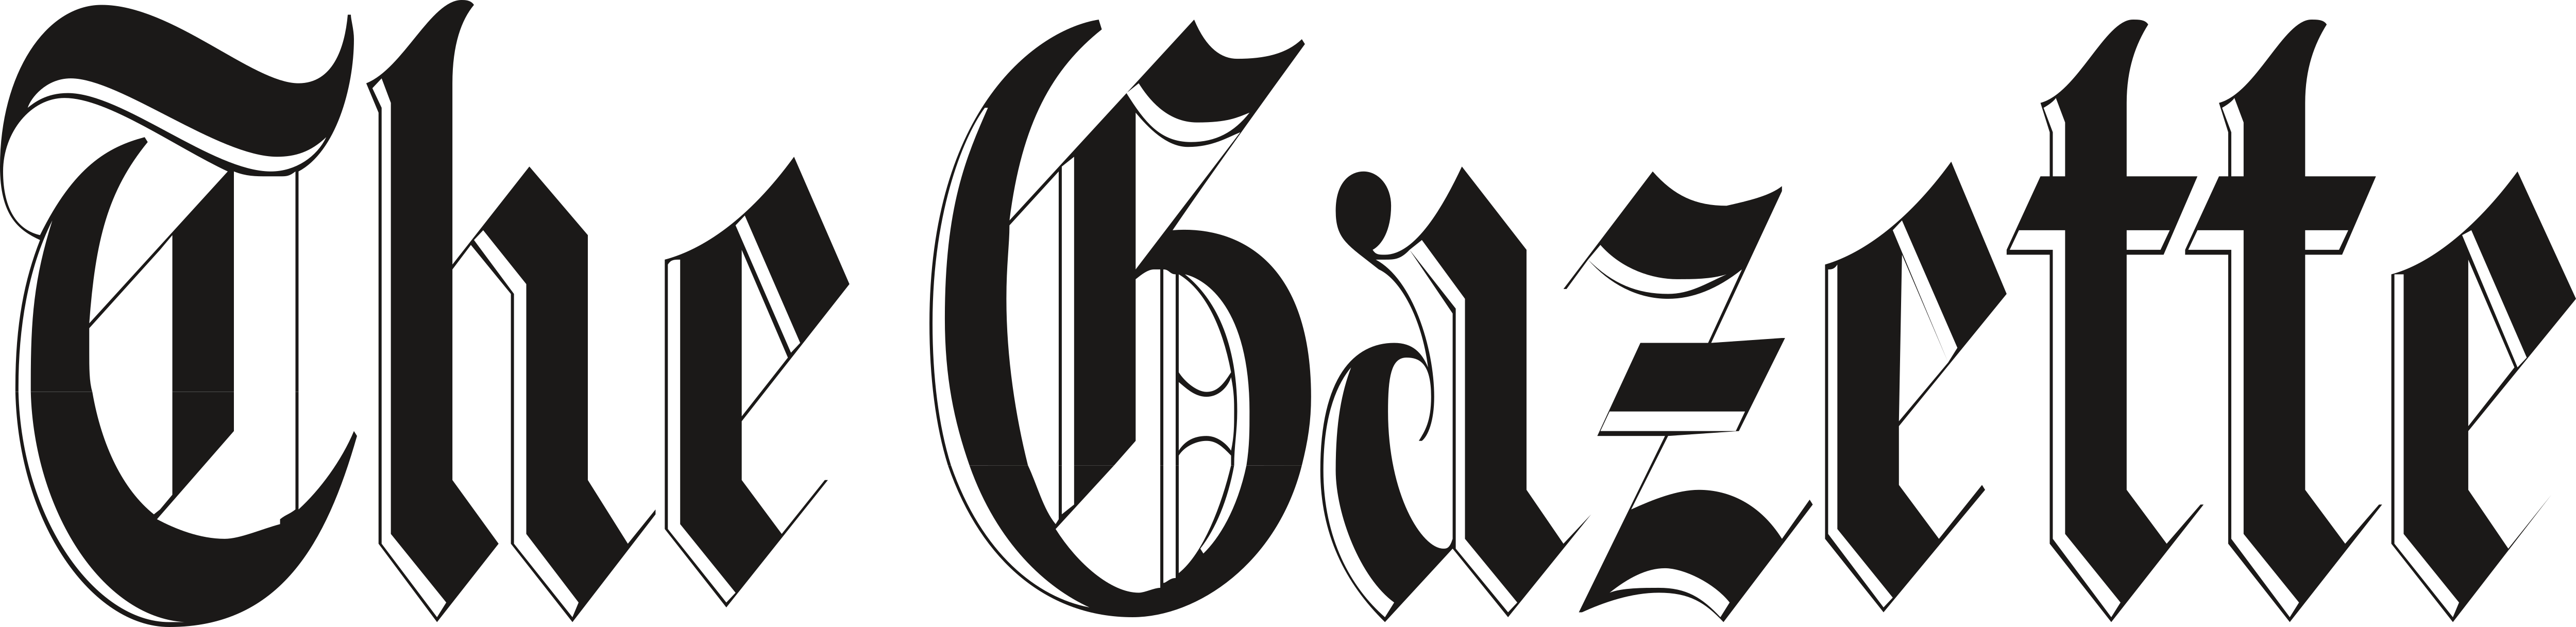 The Gazette Newspaper Logo